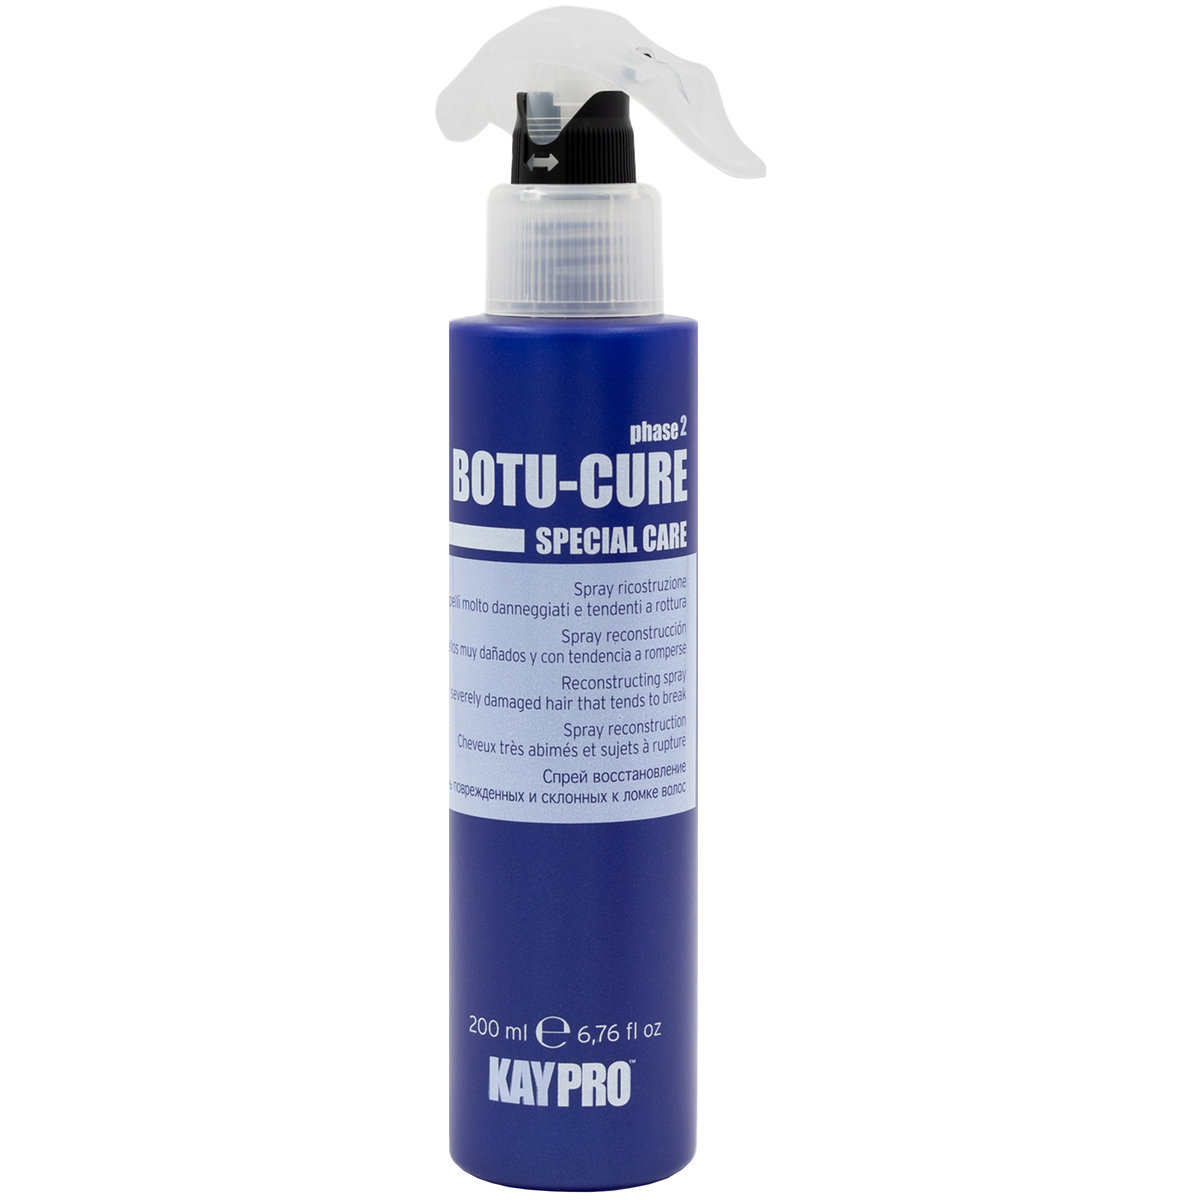 Kaypro Botu Cure Spray Regenerujący Włosy 200ml